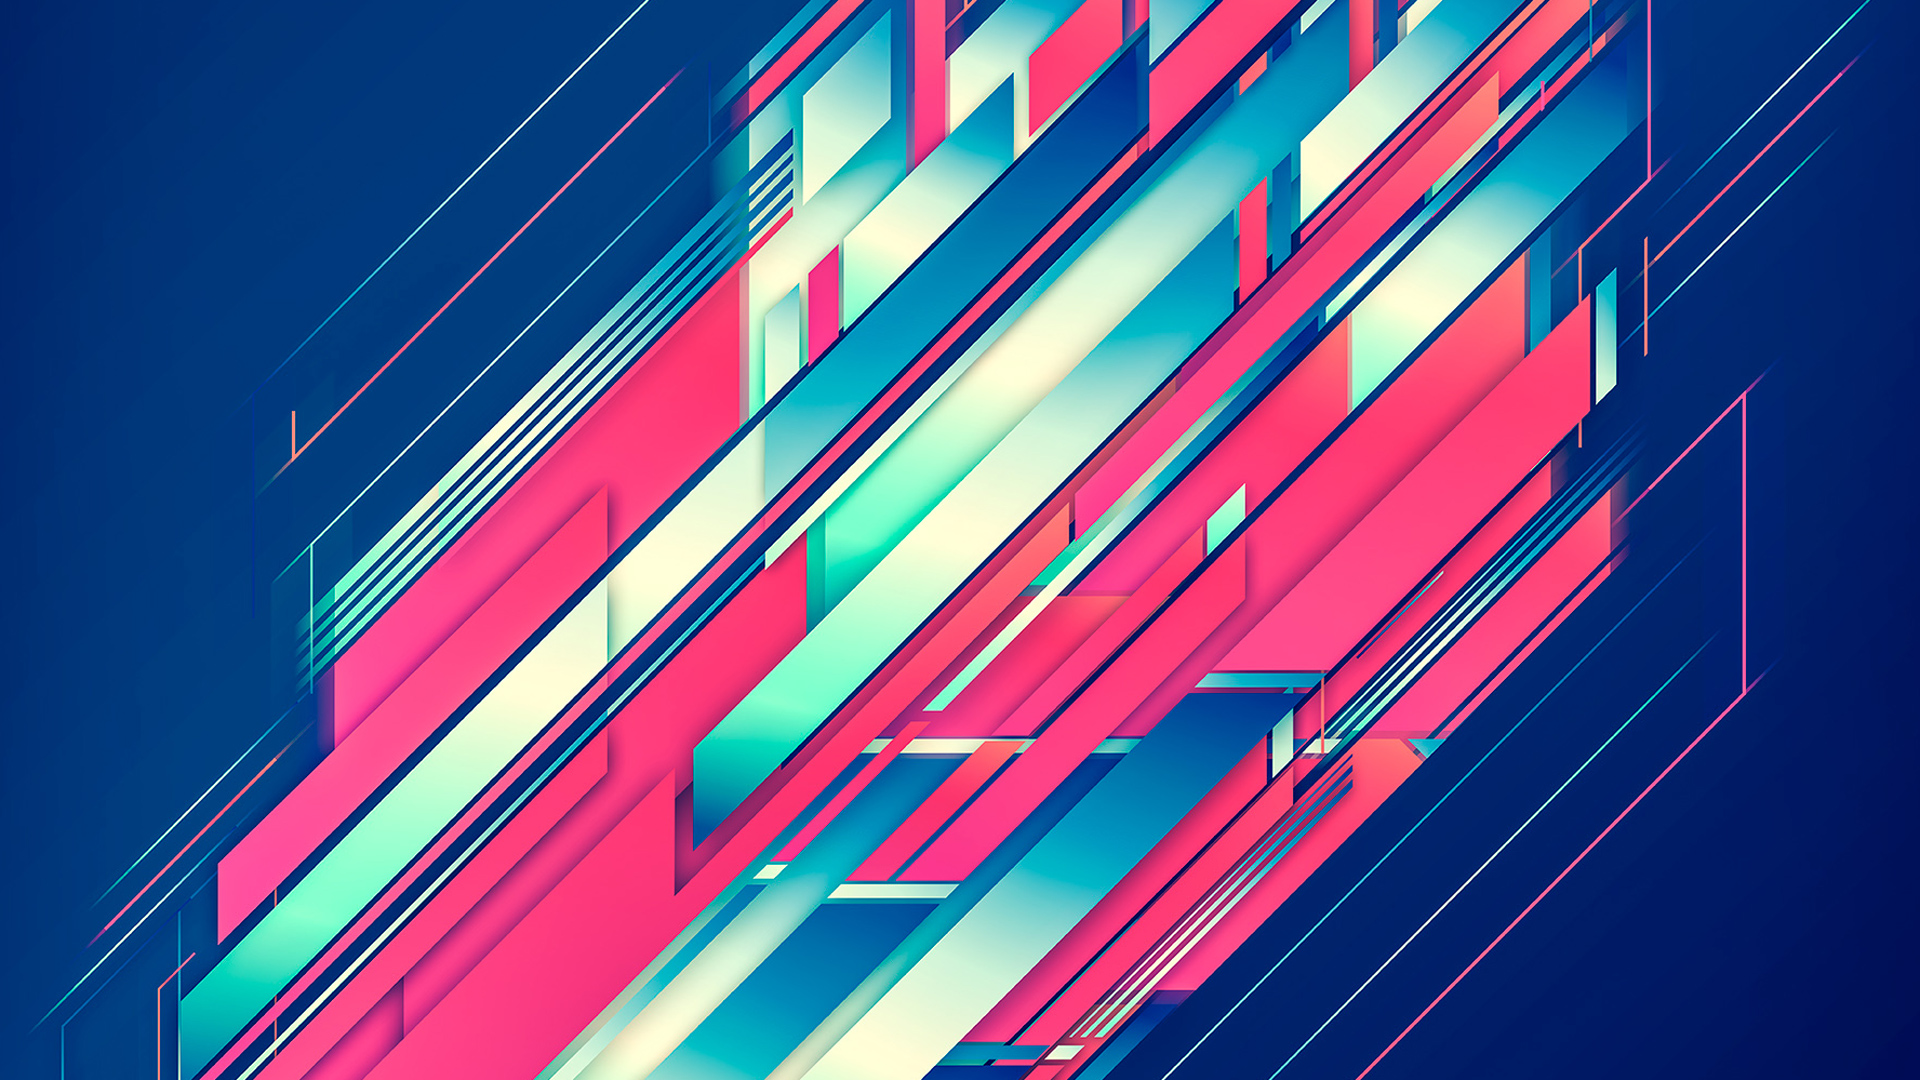 Abstract Diagonal Lines Lines Digital Art 1920x1080